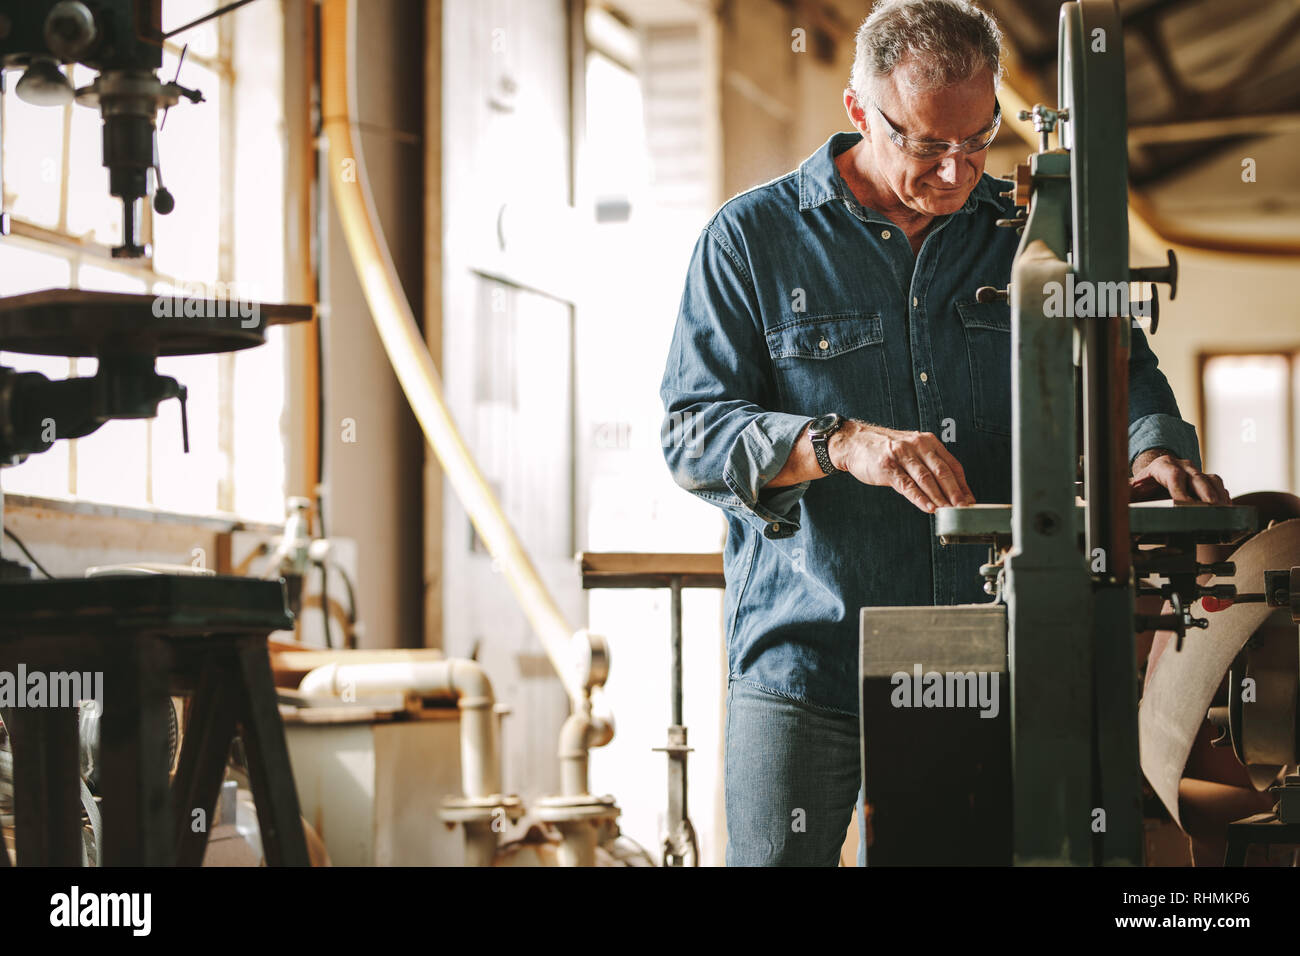 Reife männliche Tischler arbeiten an bandsäge Maschine in der Schreinerei. Ältere Menschen Schneiden von Holz auf der Maschine. Stockfoto